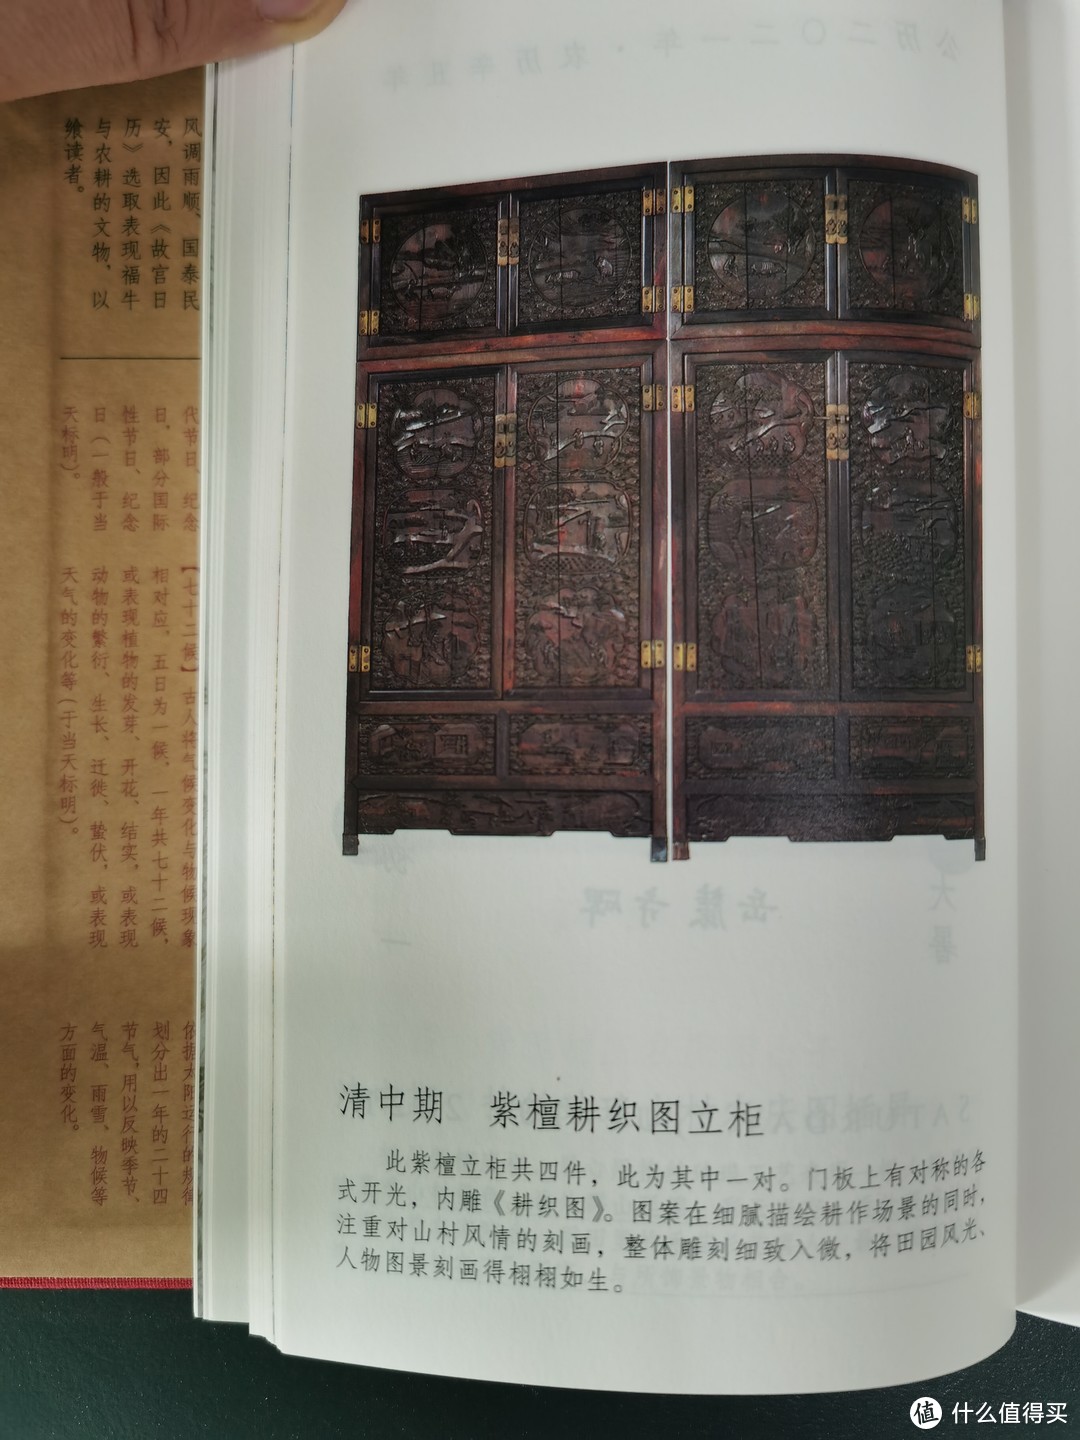 日历的左半部分都是故宫馆藏文物，照片印刷精美，还有文物的介绍等等